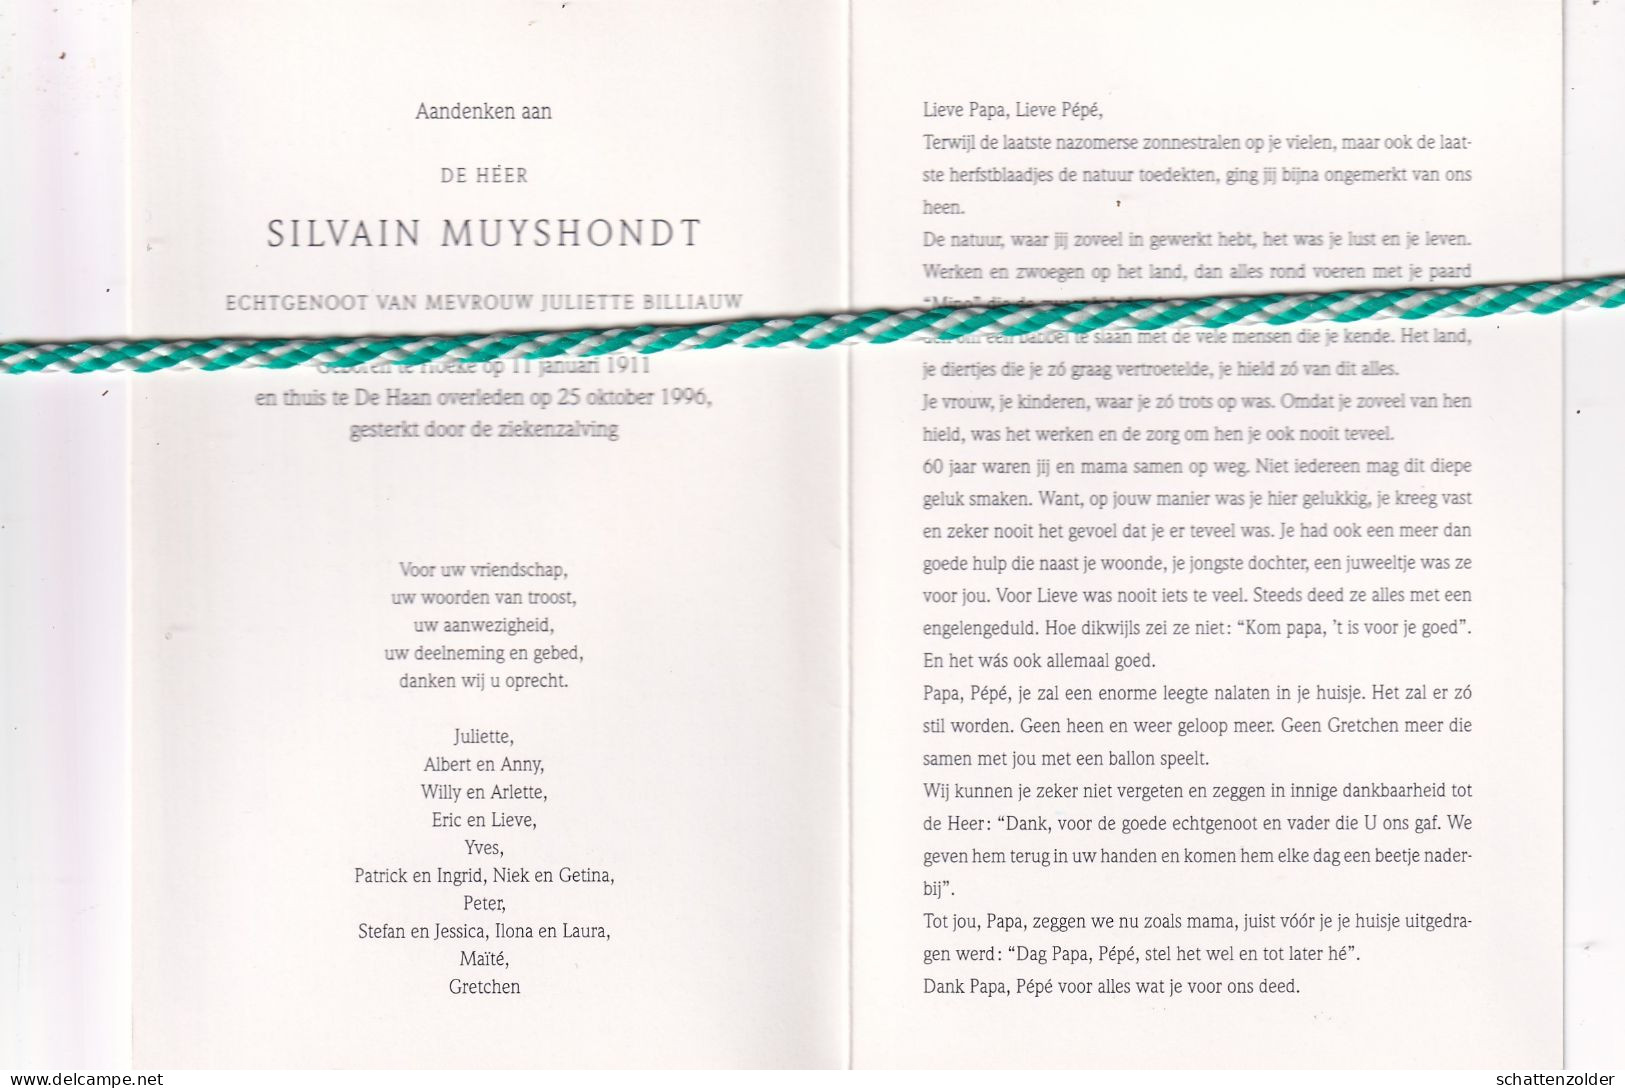 Silvain Muyshondt-Billiauw, Hoeke 1911, De Haan 1996. Foto - Overlijden